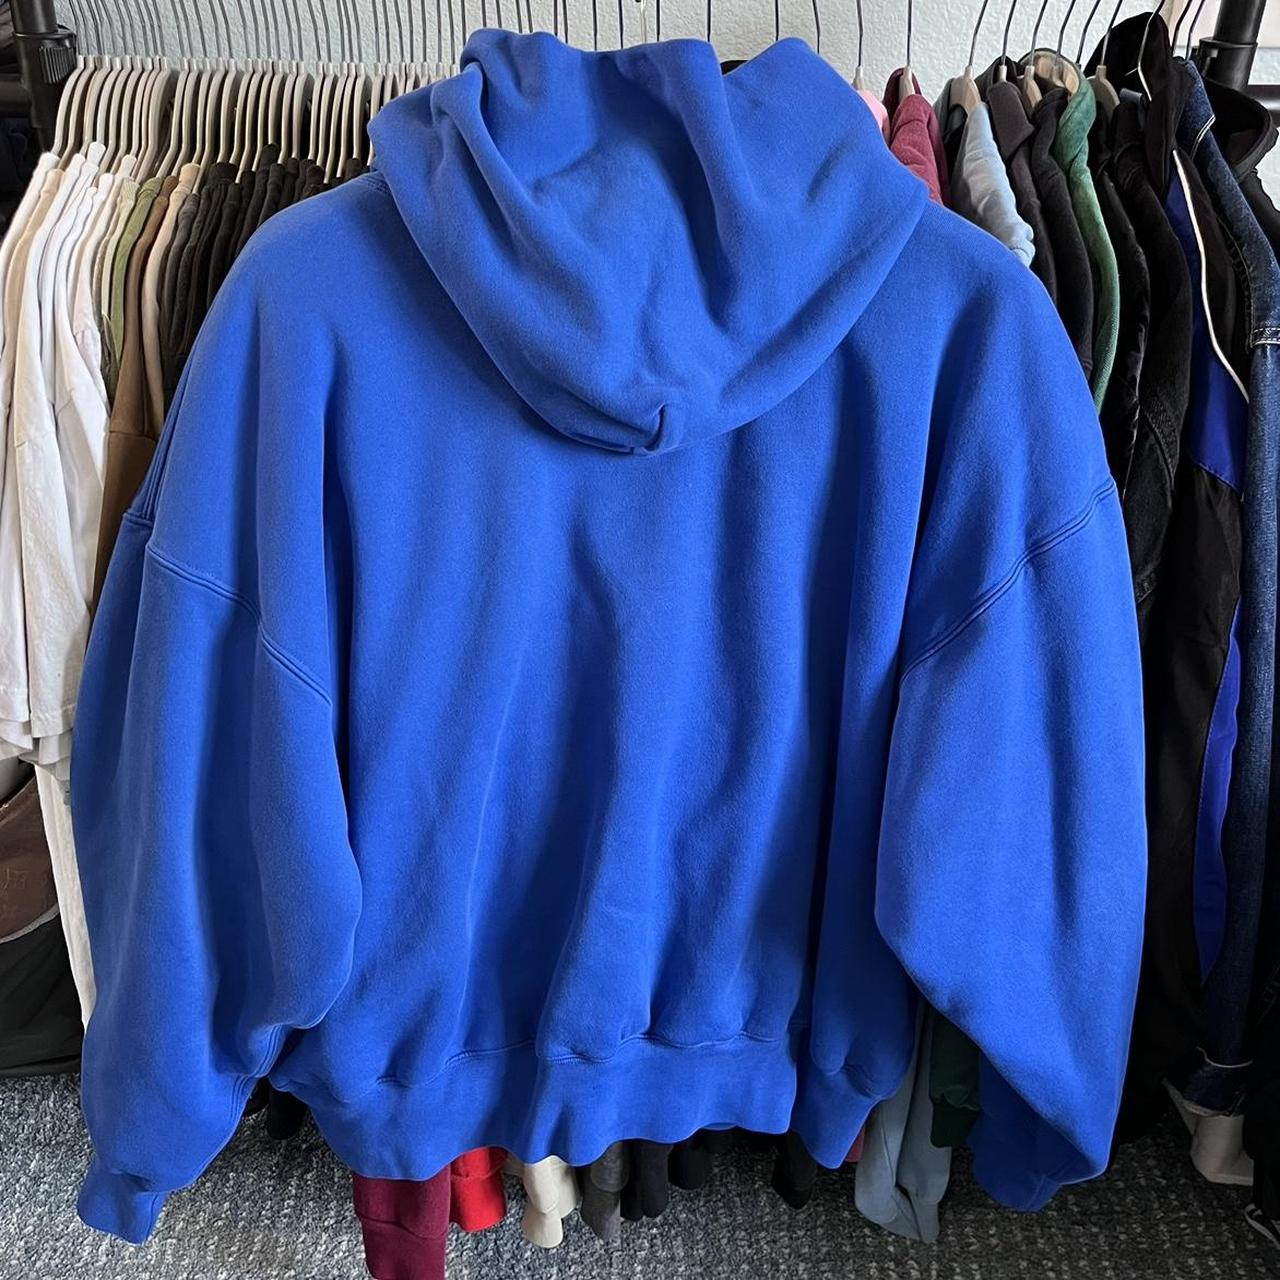 YZY X GAP Perfect hoodie blue - YZY GAP - OG hoodie... - Depop